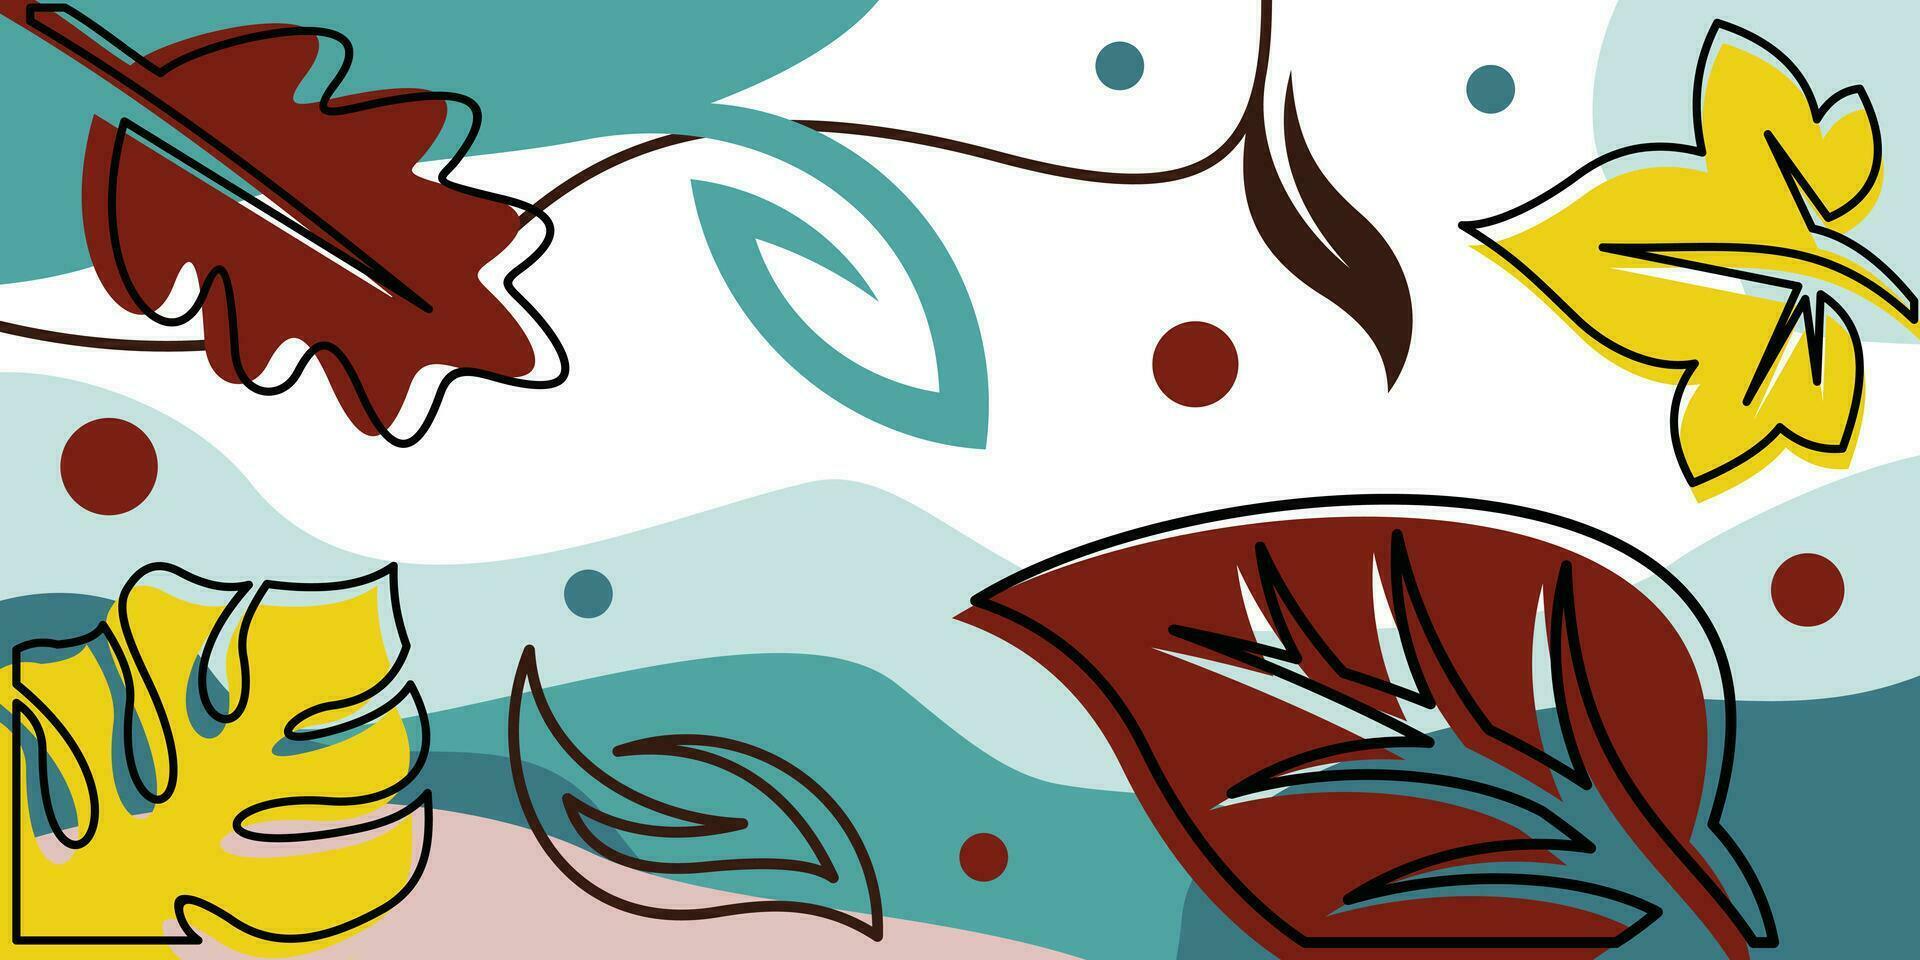 Natur Vektor Illustration von Blätter mit Blau, Rosa, und braun Farbe Illustration Vorlage Design auf Weiß Hintergrund